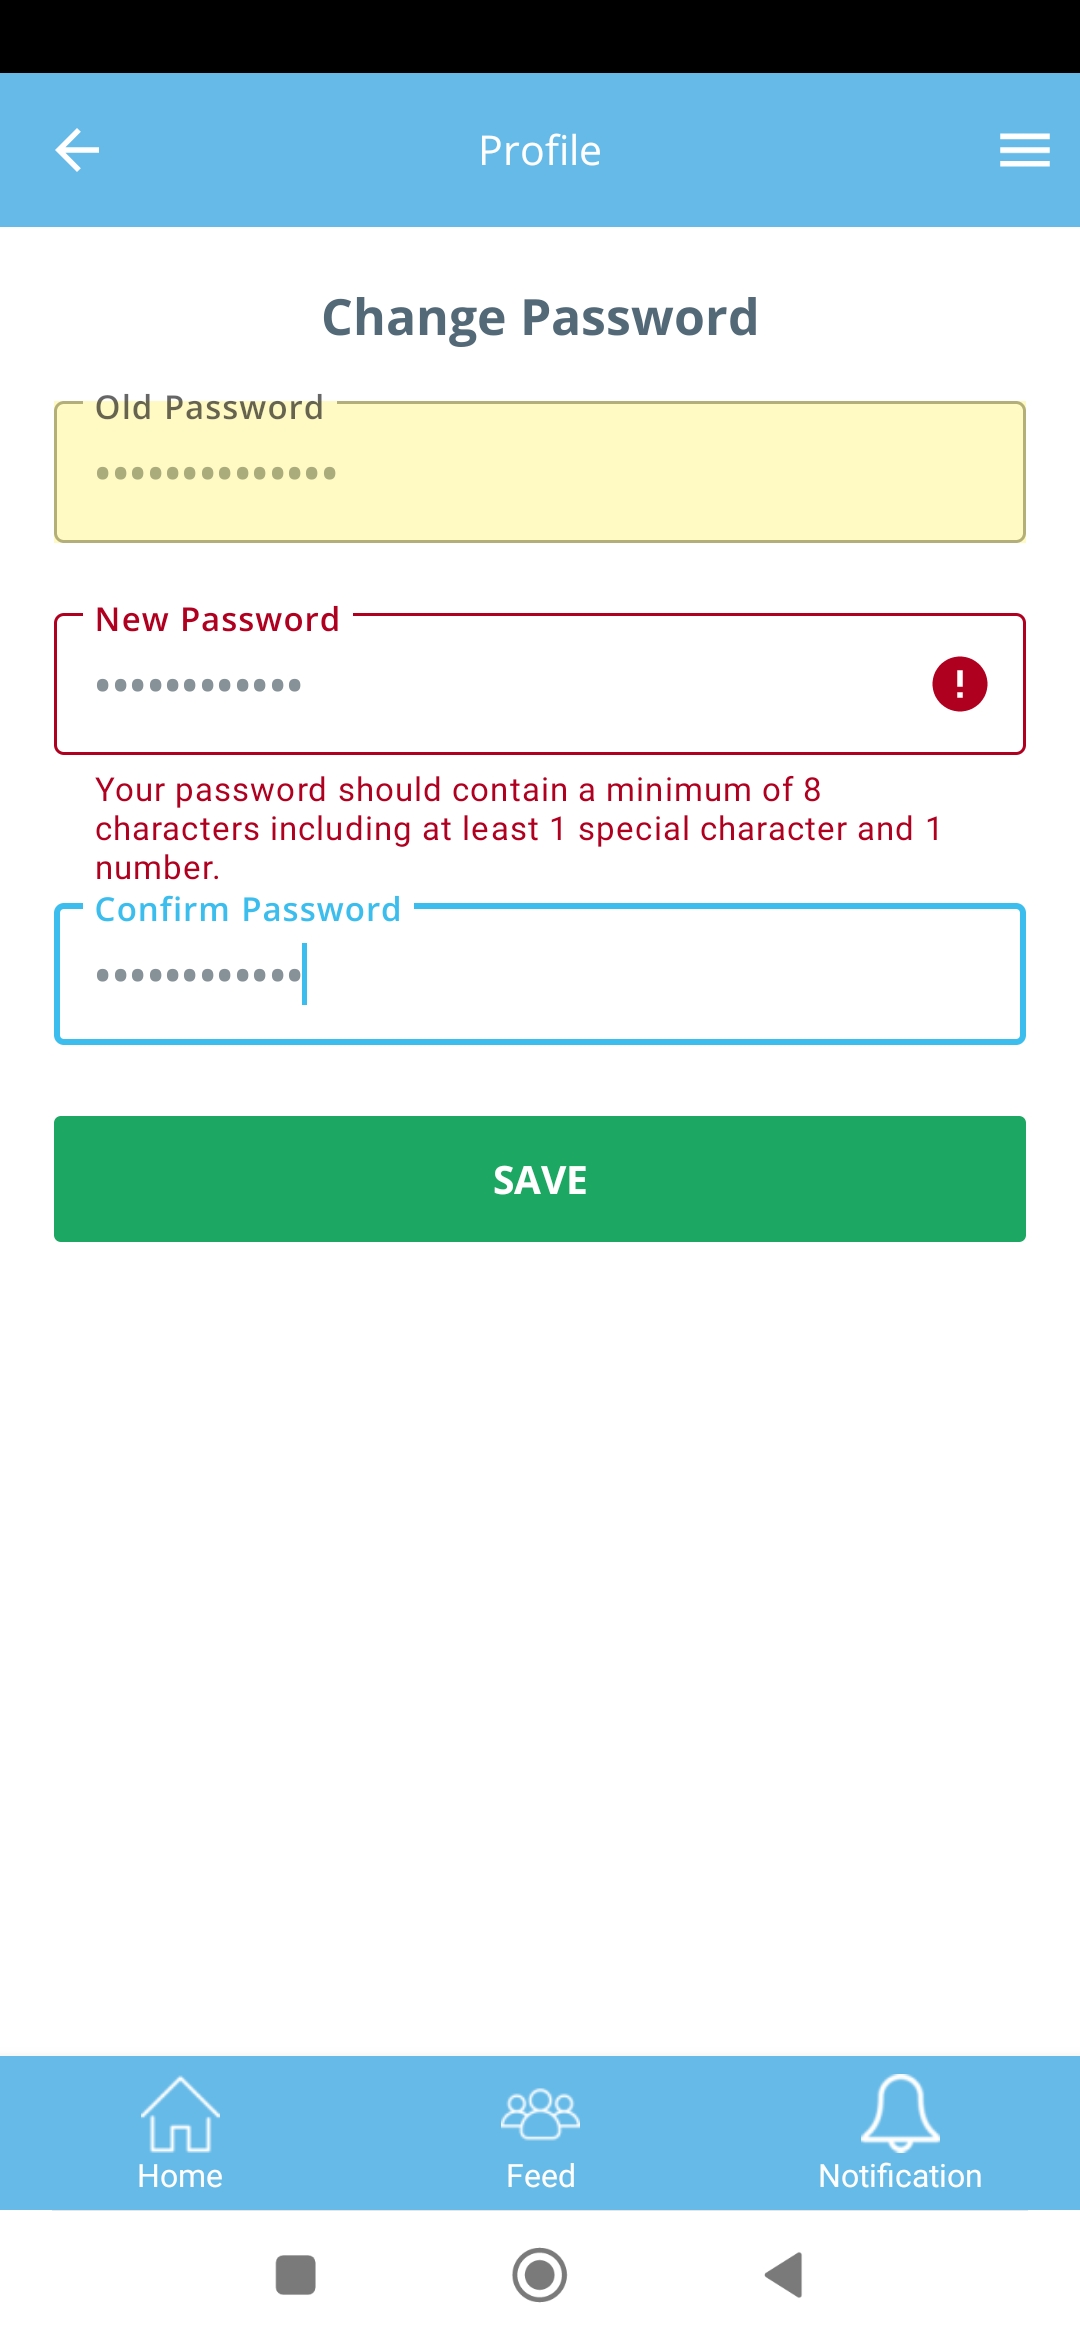 Warnmeldung wird angezeigt, wenn der Benutzer ein neues Passwort gemäß den Anforderungen angibt